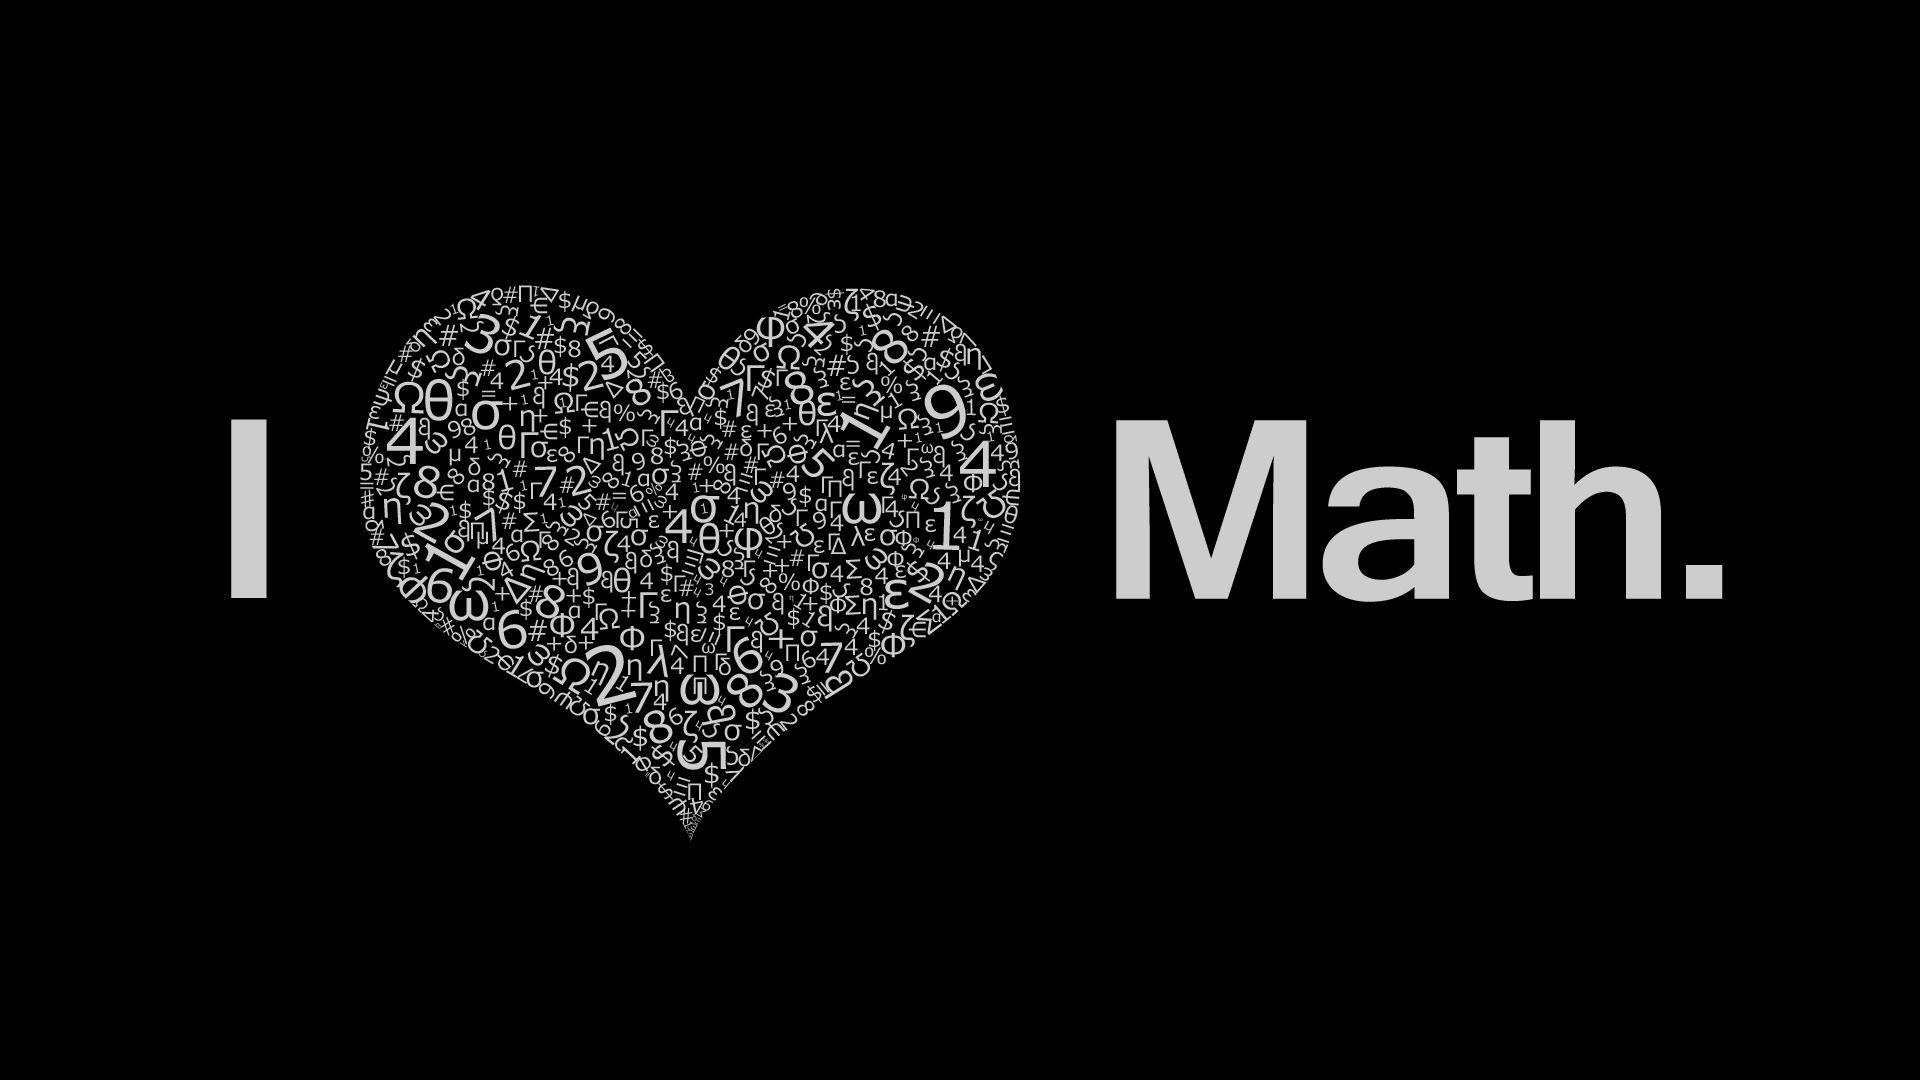 I Love Math wallpaper. Math wallpaper, I love math, Love math